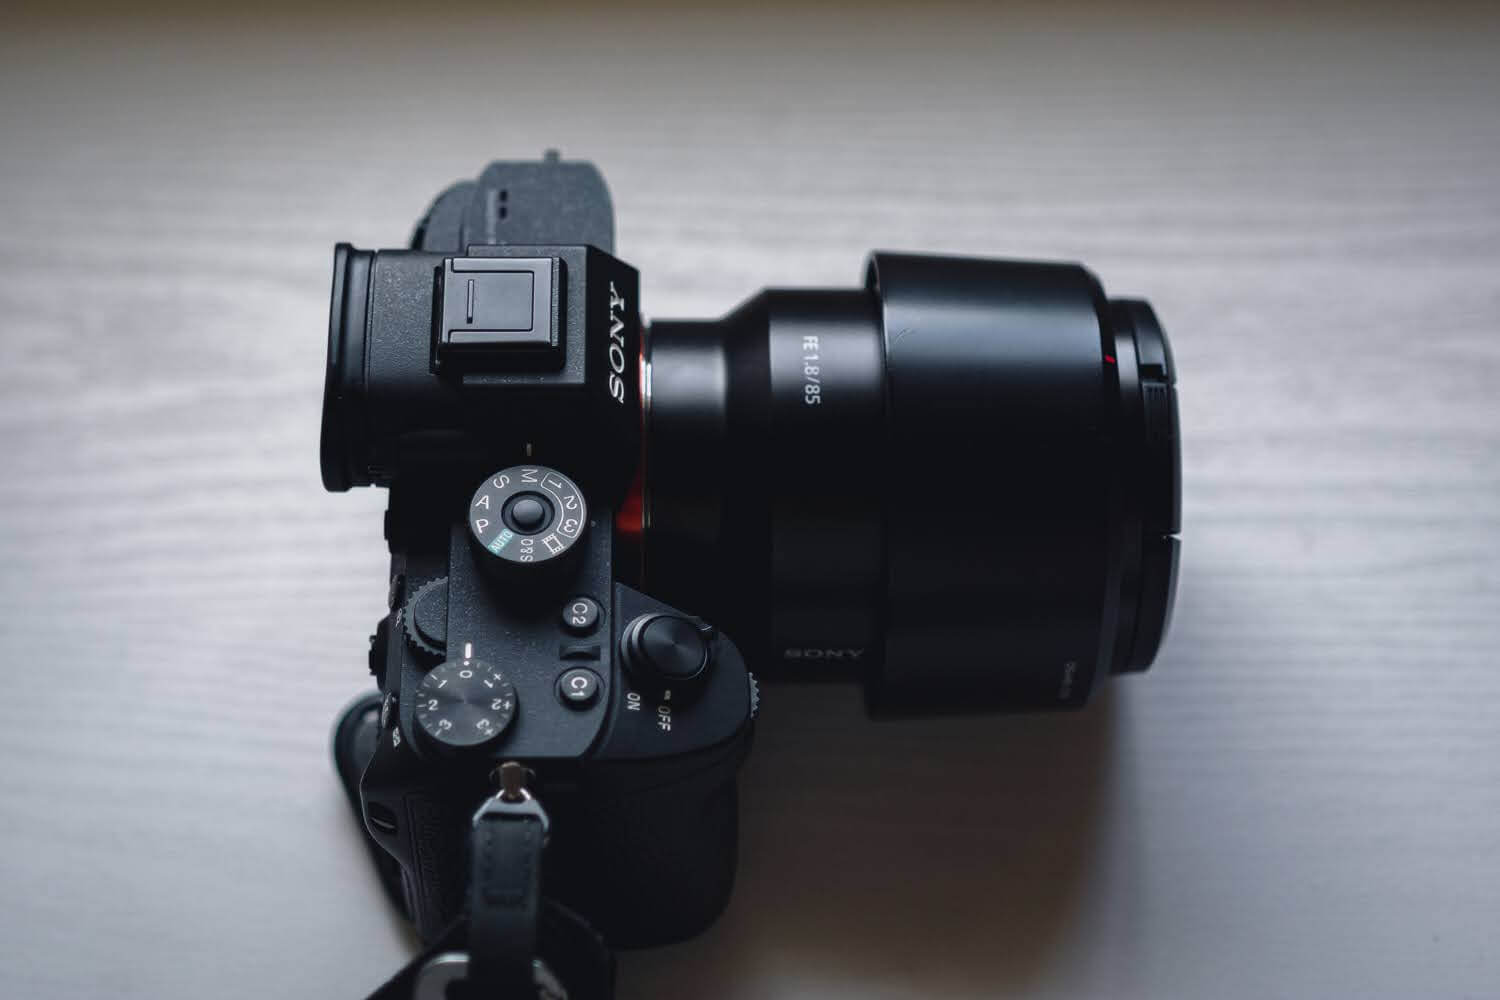 SONY FE 85mm F1.8 作例 レビュー 単焦点 レンズ ポートレート